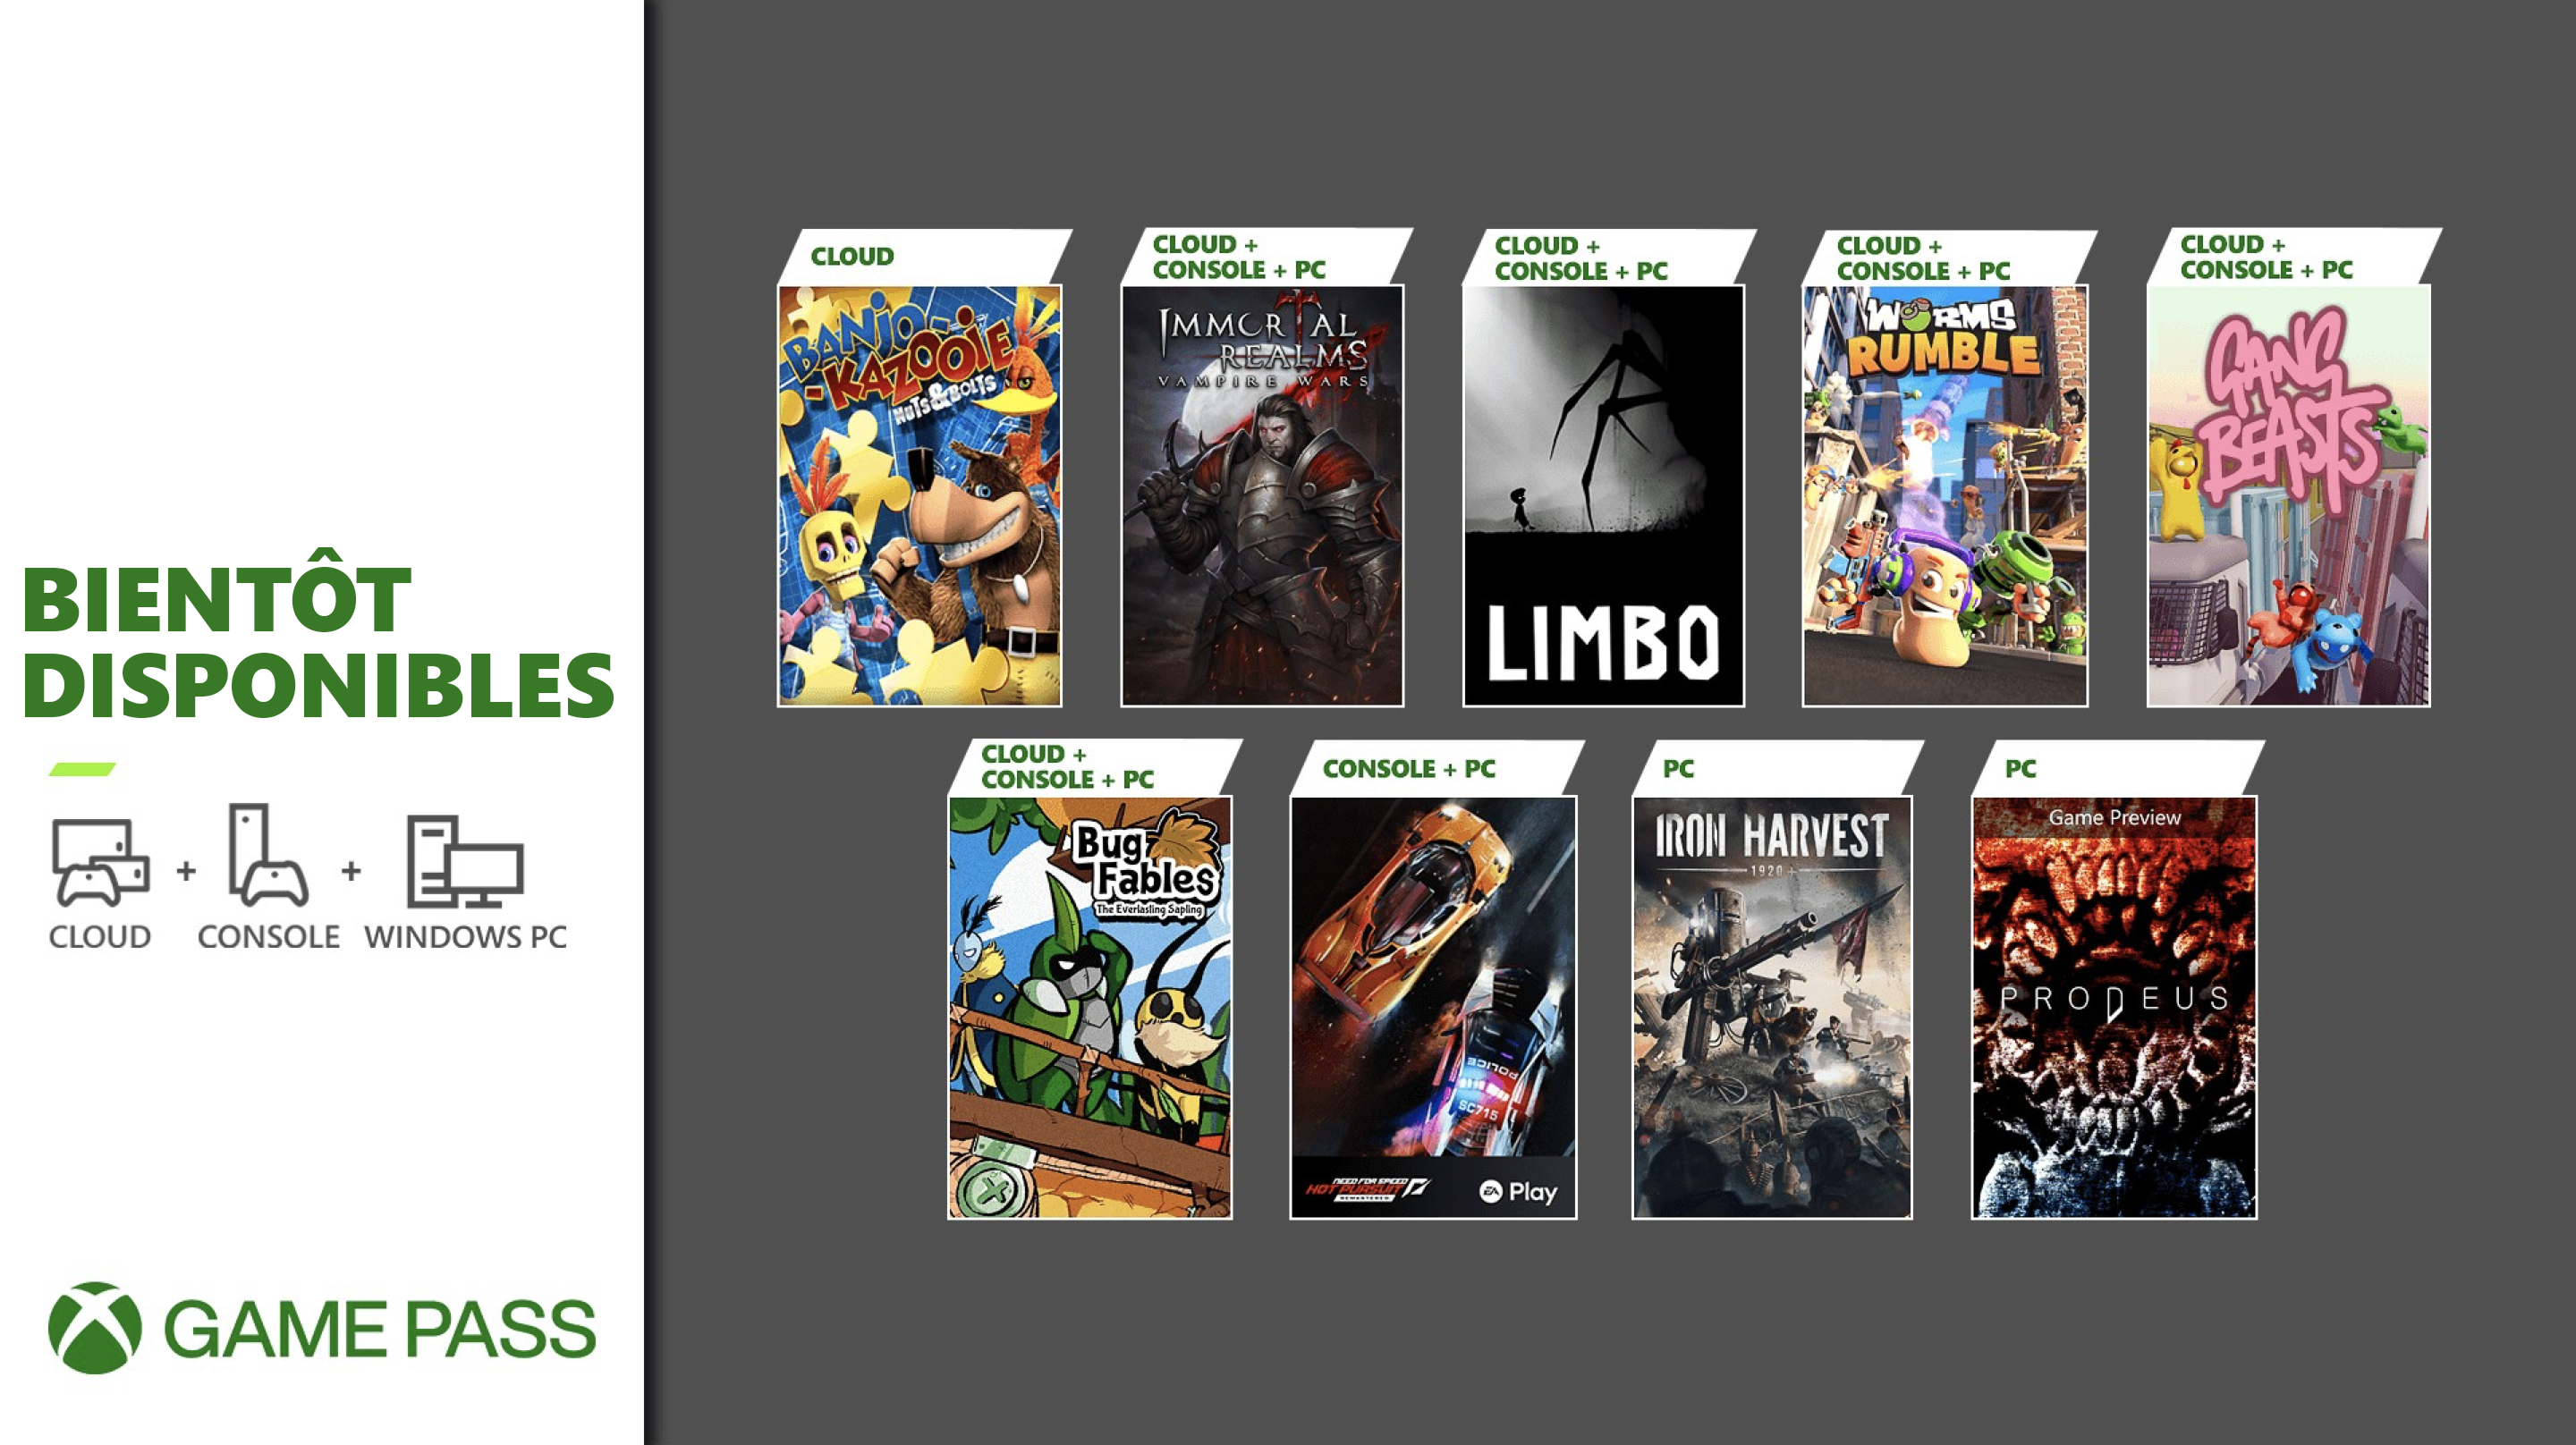 Prochainement dans le Xbox Game Pass : Gang Beasts, Limbo, Prodeus et plus encore